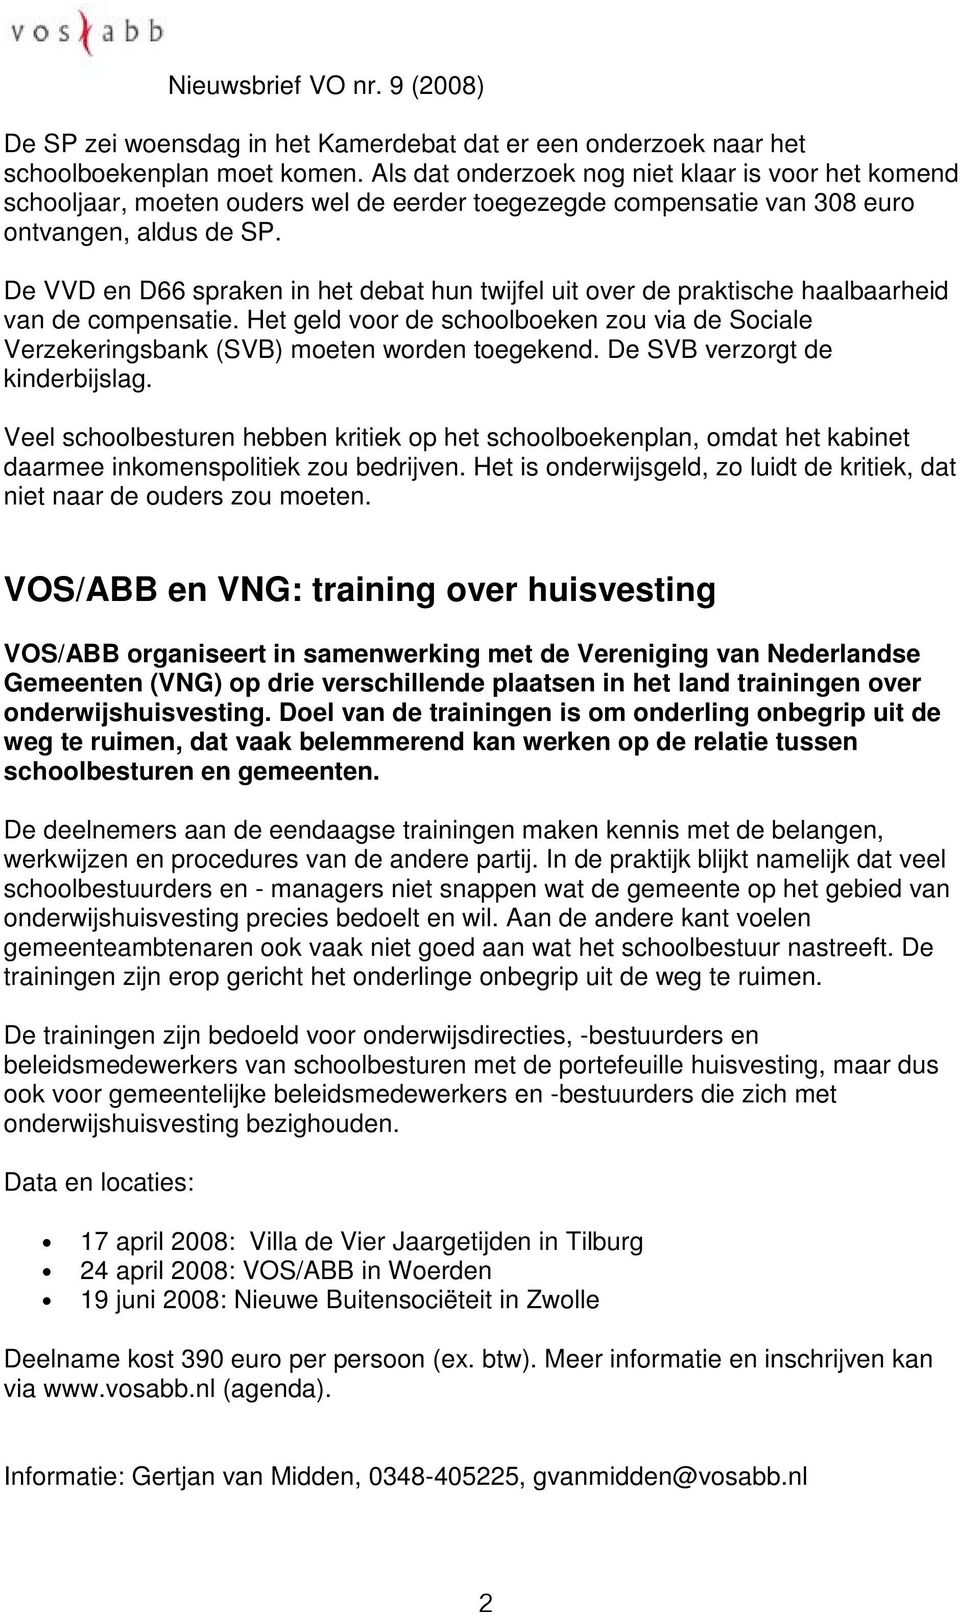 De VVD en D66 spraken in het debat hun twijfel uit over de praktische haalbaarheid van de compensatie. Het geld voor de schoolboeken zou via de Sociale Verzekeringsbank (SVB) moeten worden toegekend.